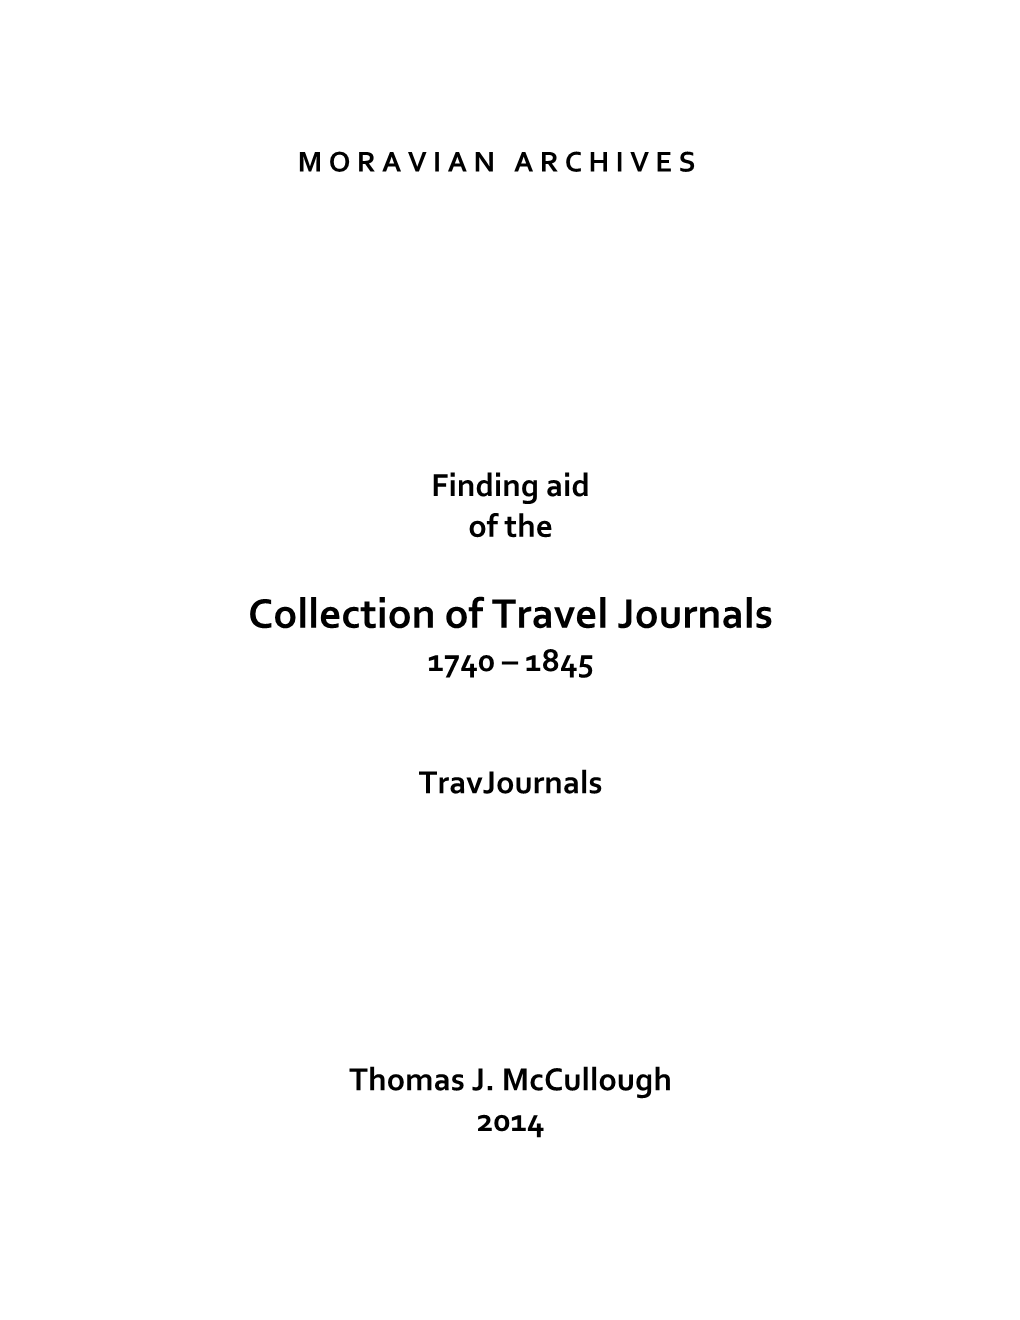 Travel Journals 1740 – 1845